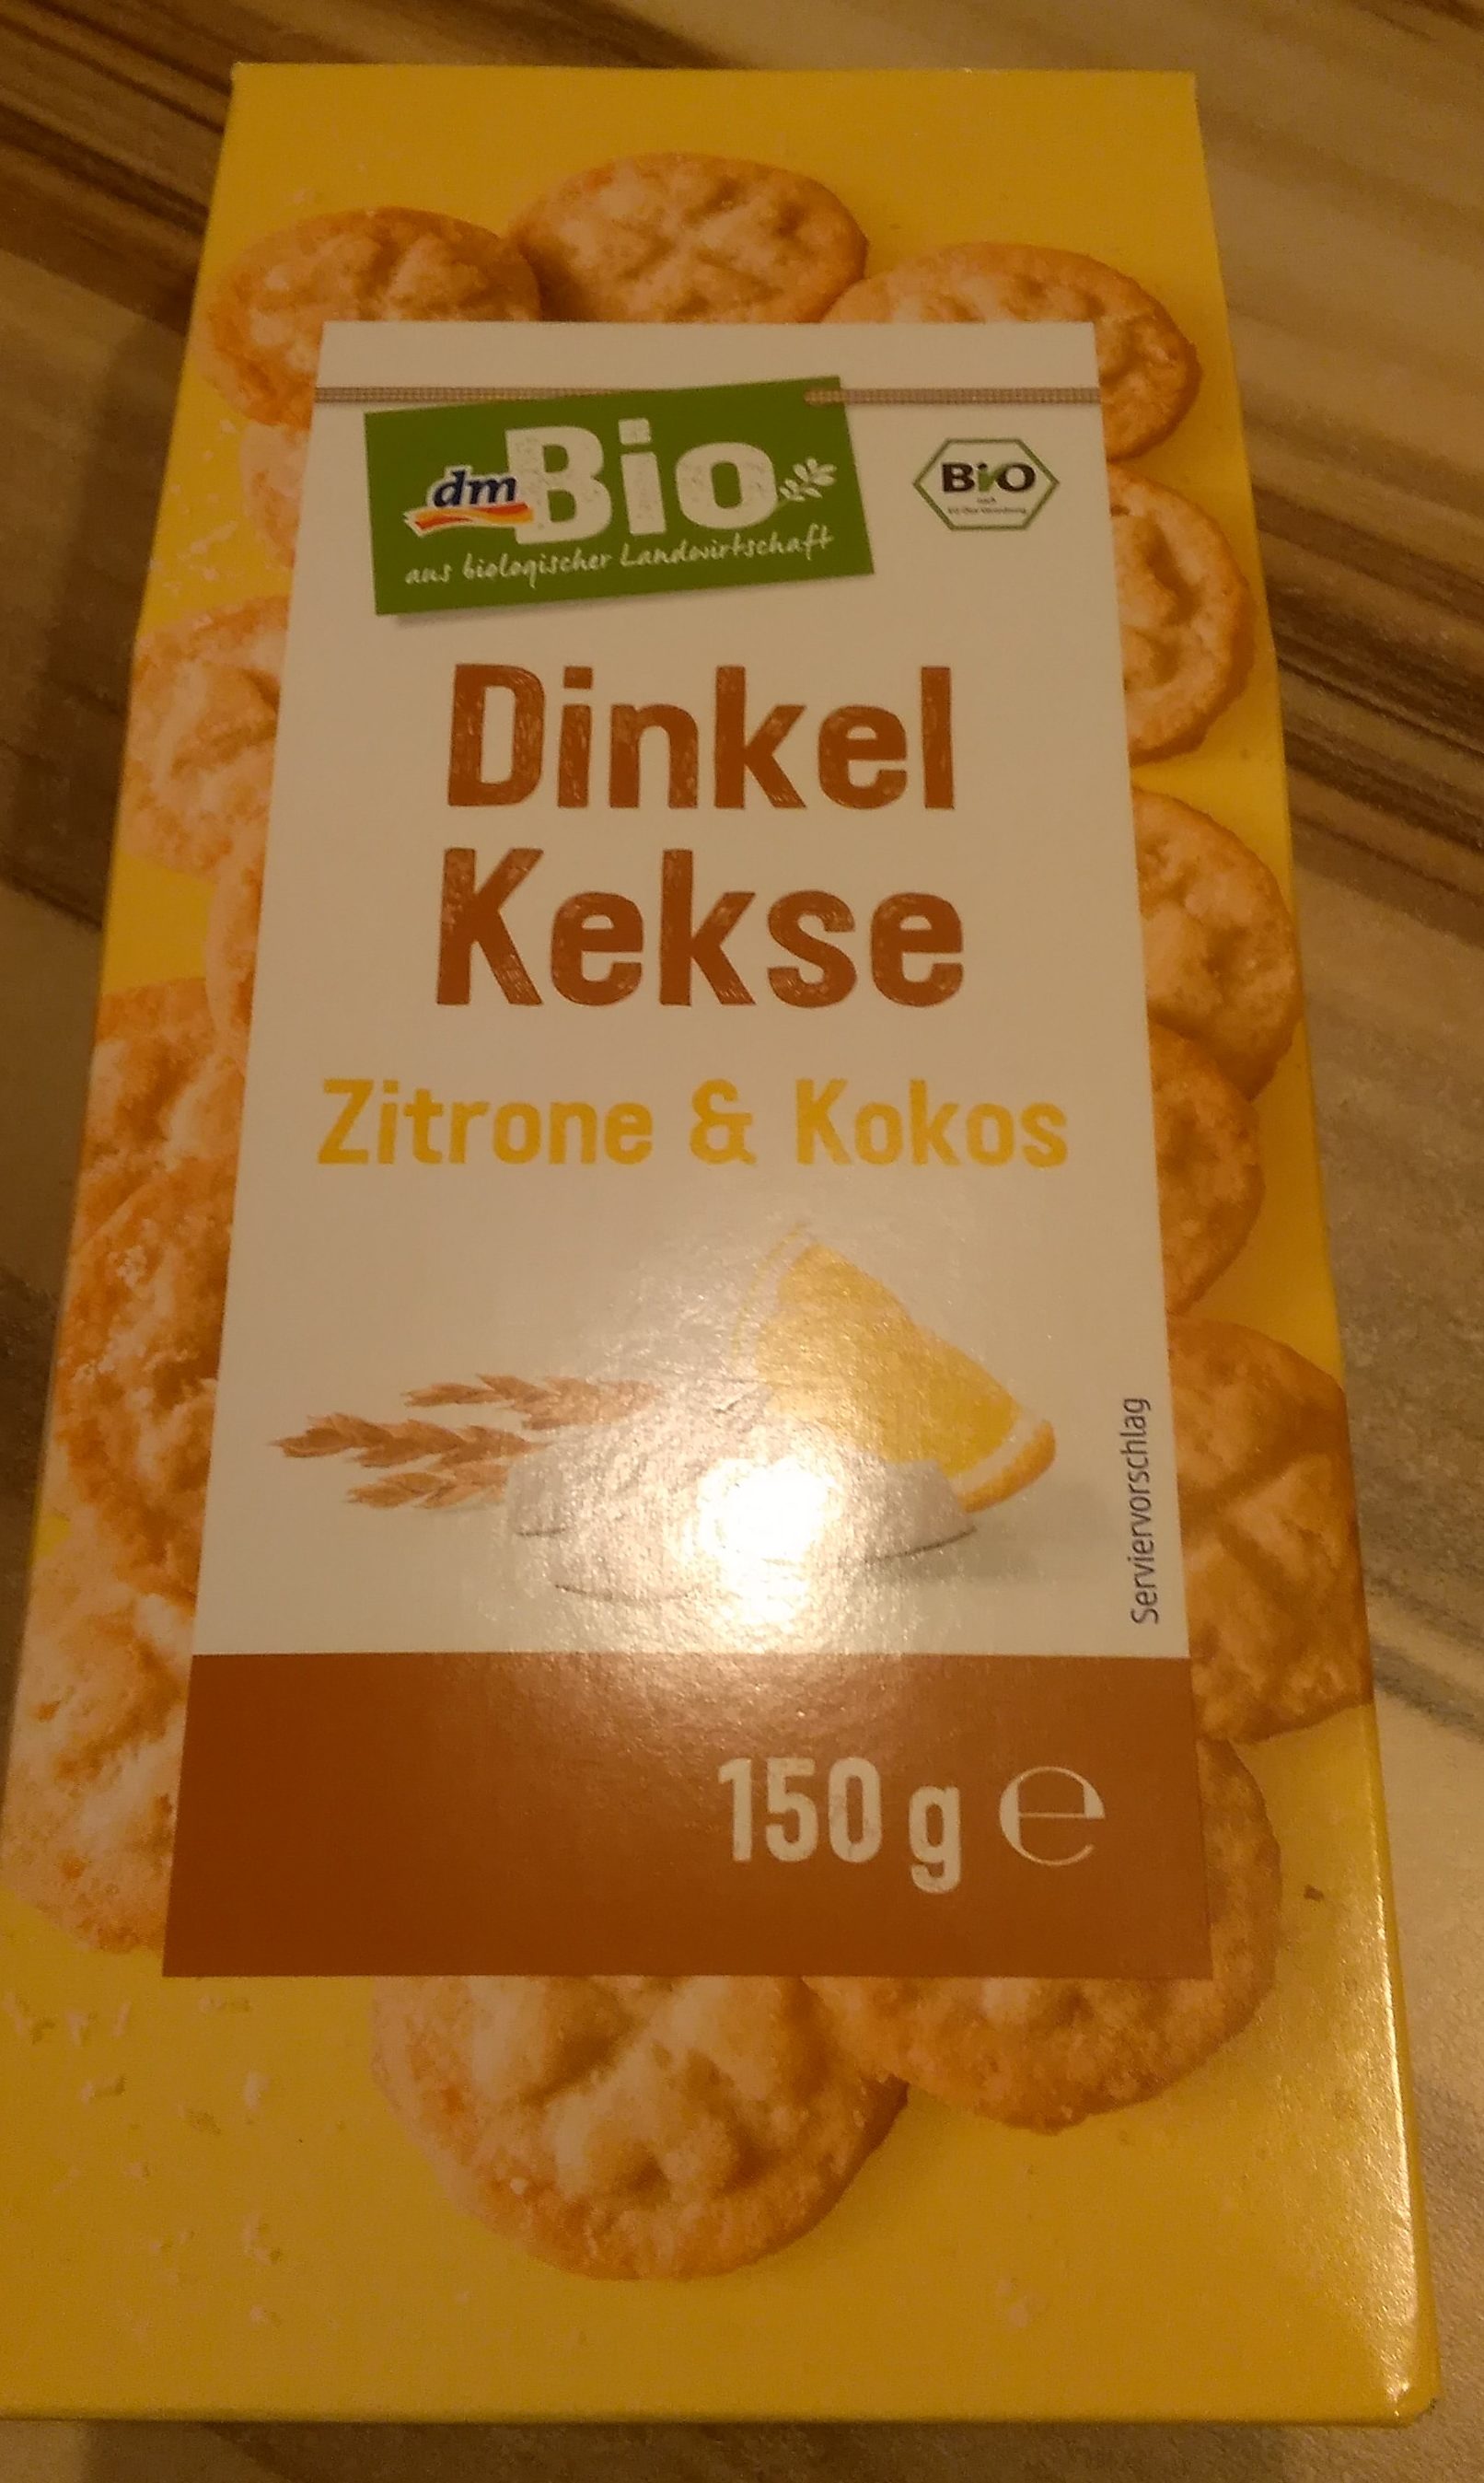 Dinkel Kekse, Zittrone & Kokos - Product - de